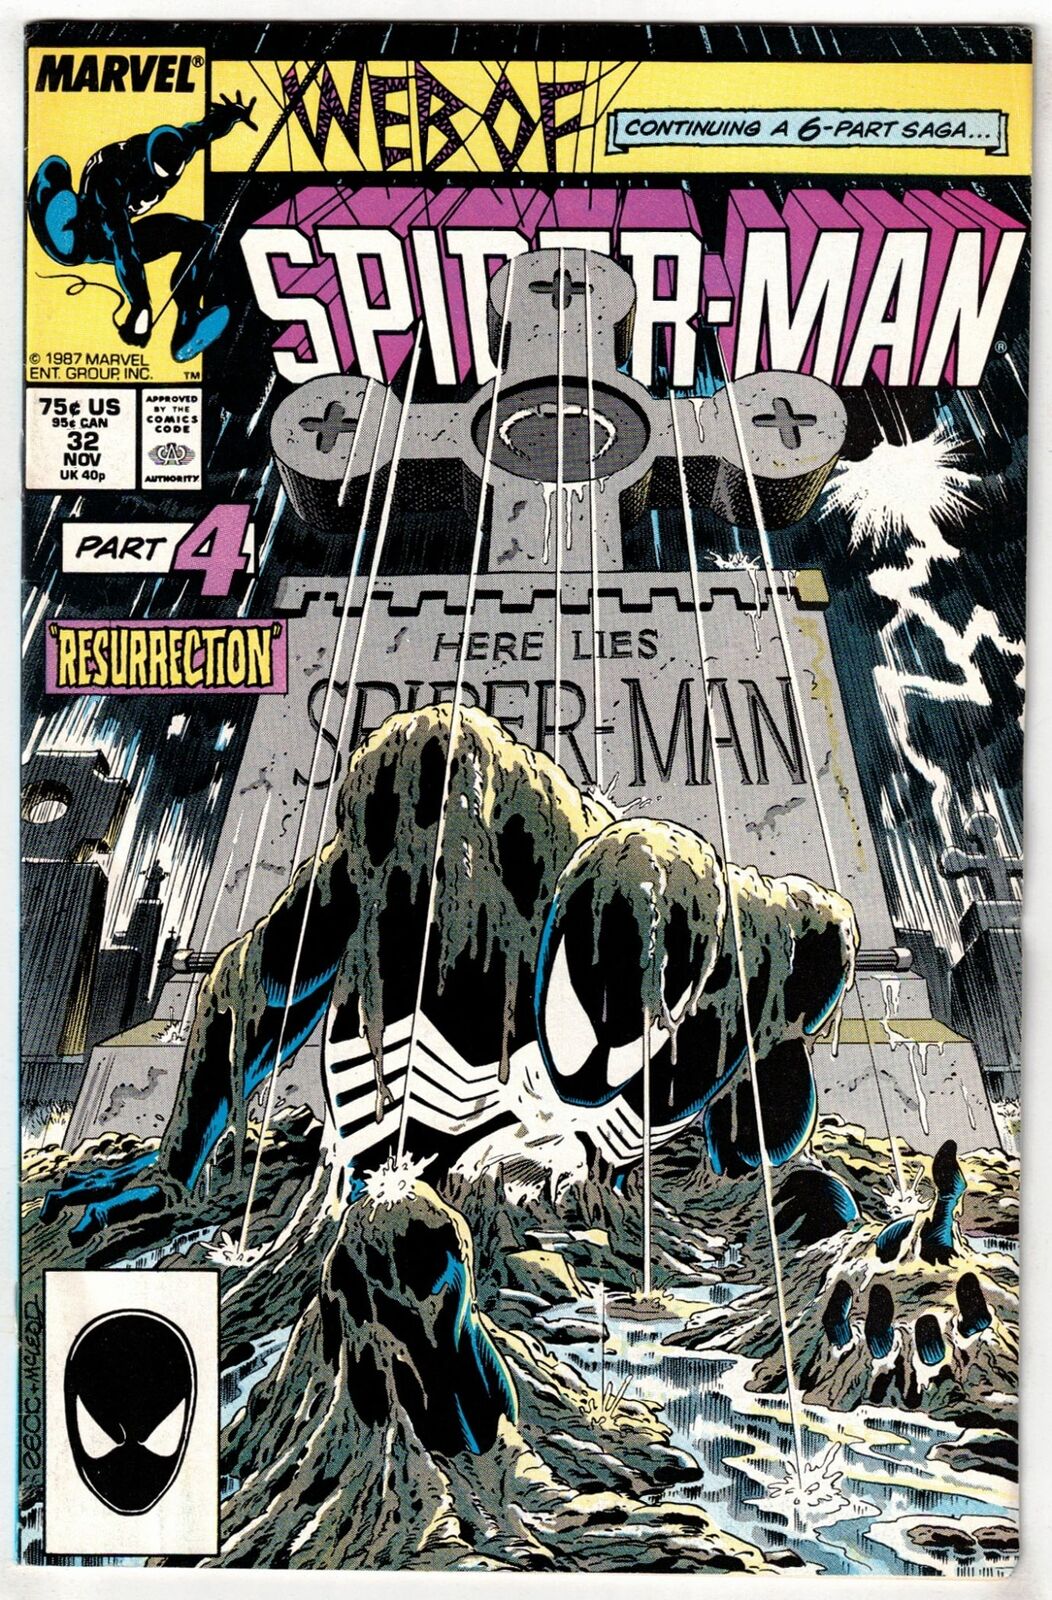 WEB OF SPIDER-MAN #32 (1987)- KRAVEN'S LAST HUNT PART 4- MIKE ZECK COVER- F/VF